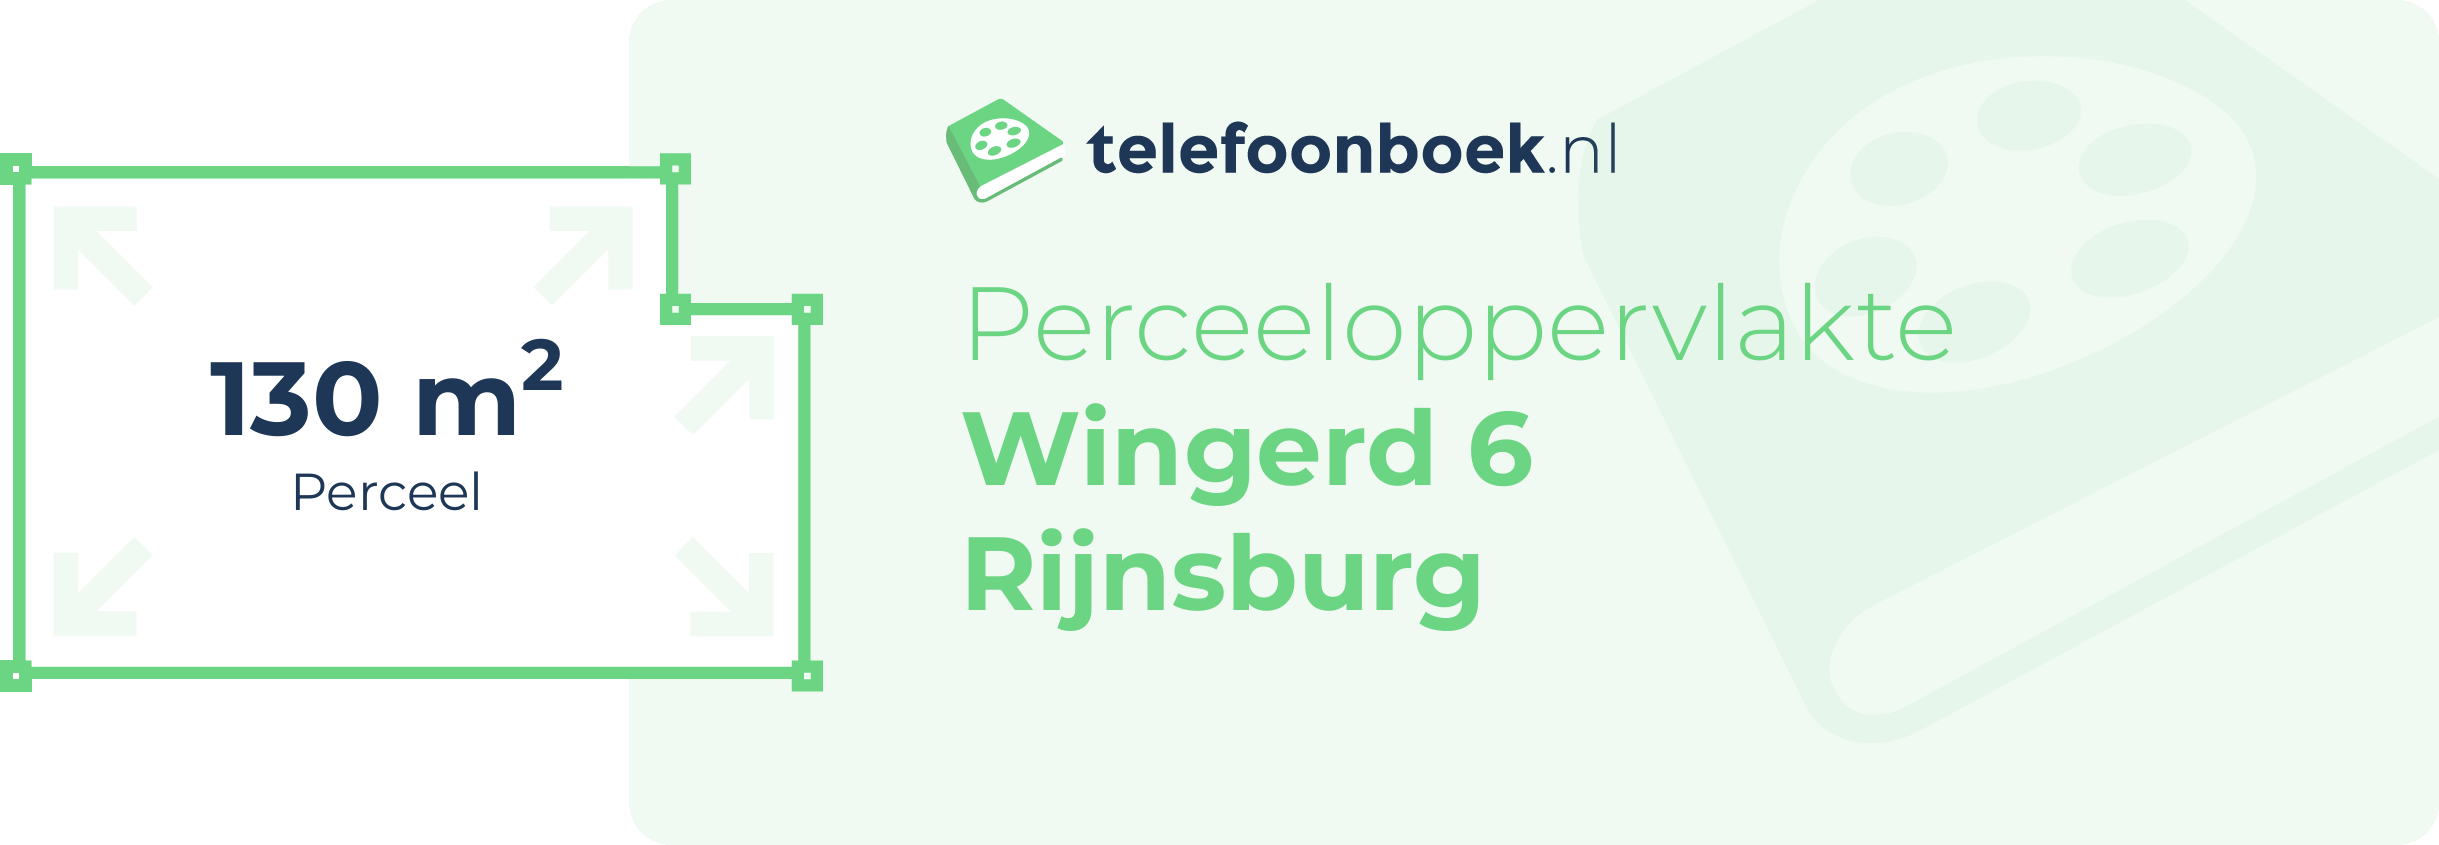 Perceeloppervlakte Wingerd 6 Rijnsburg